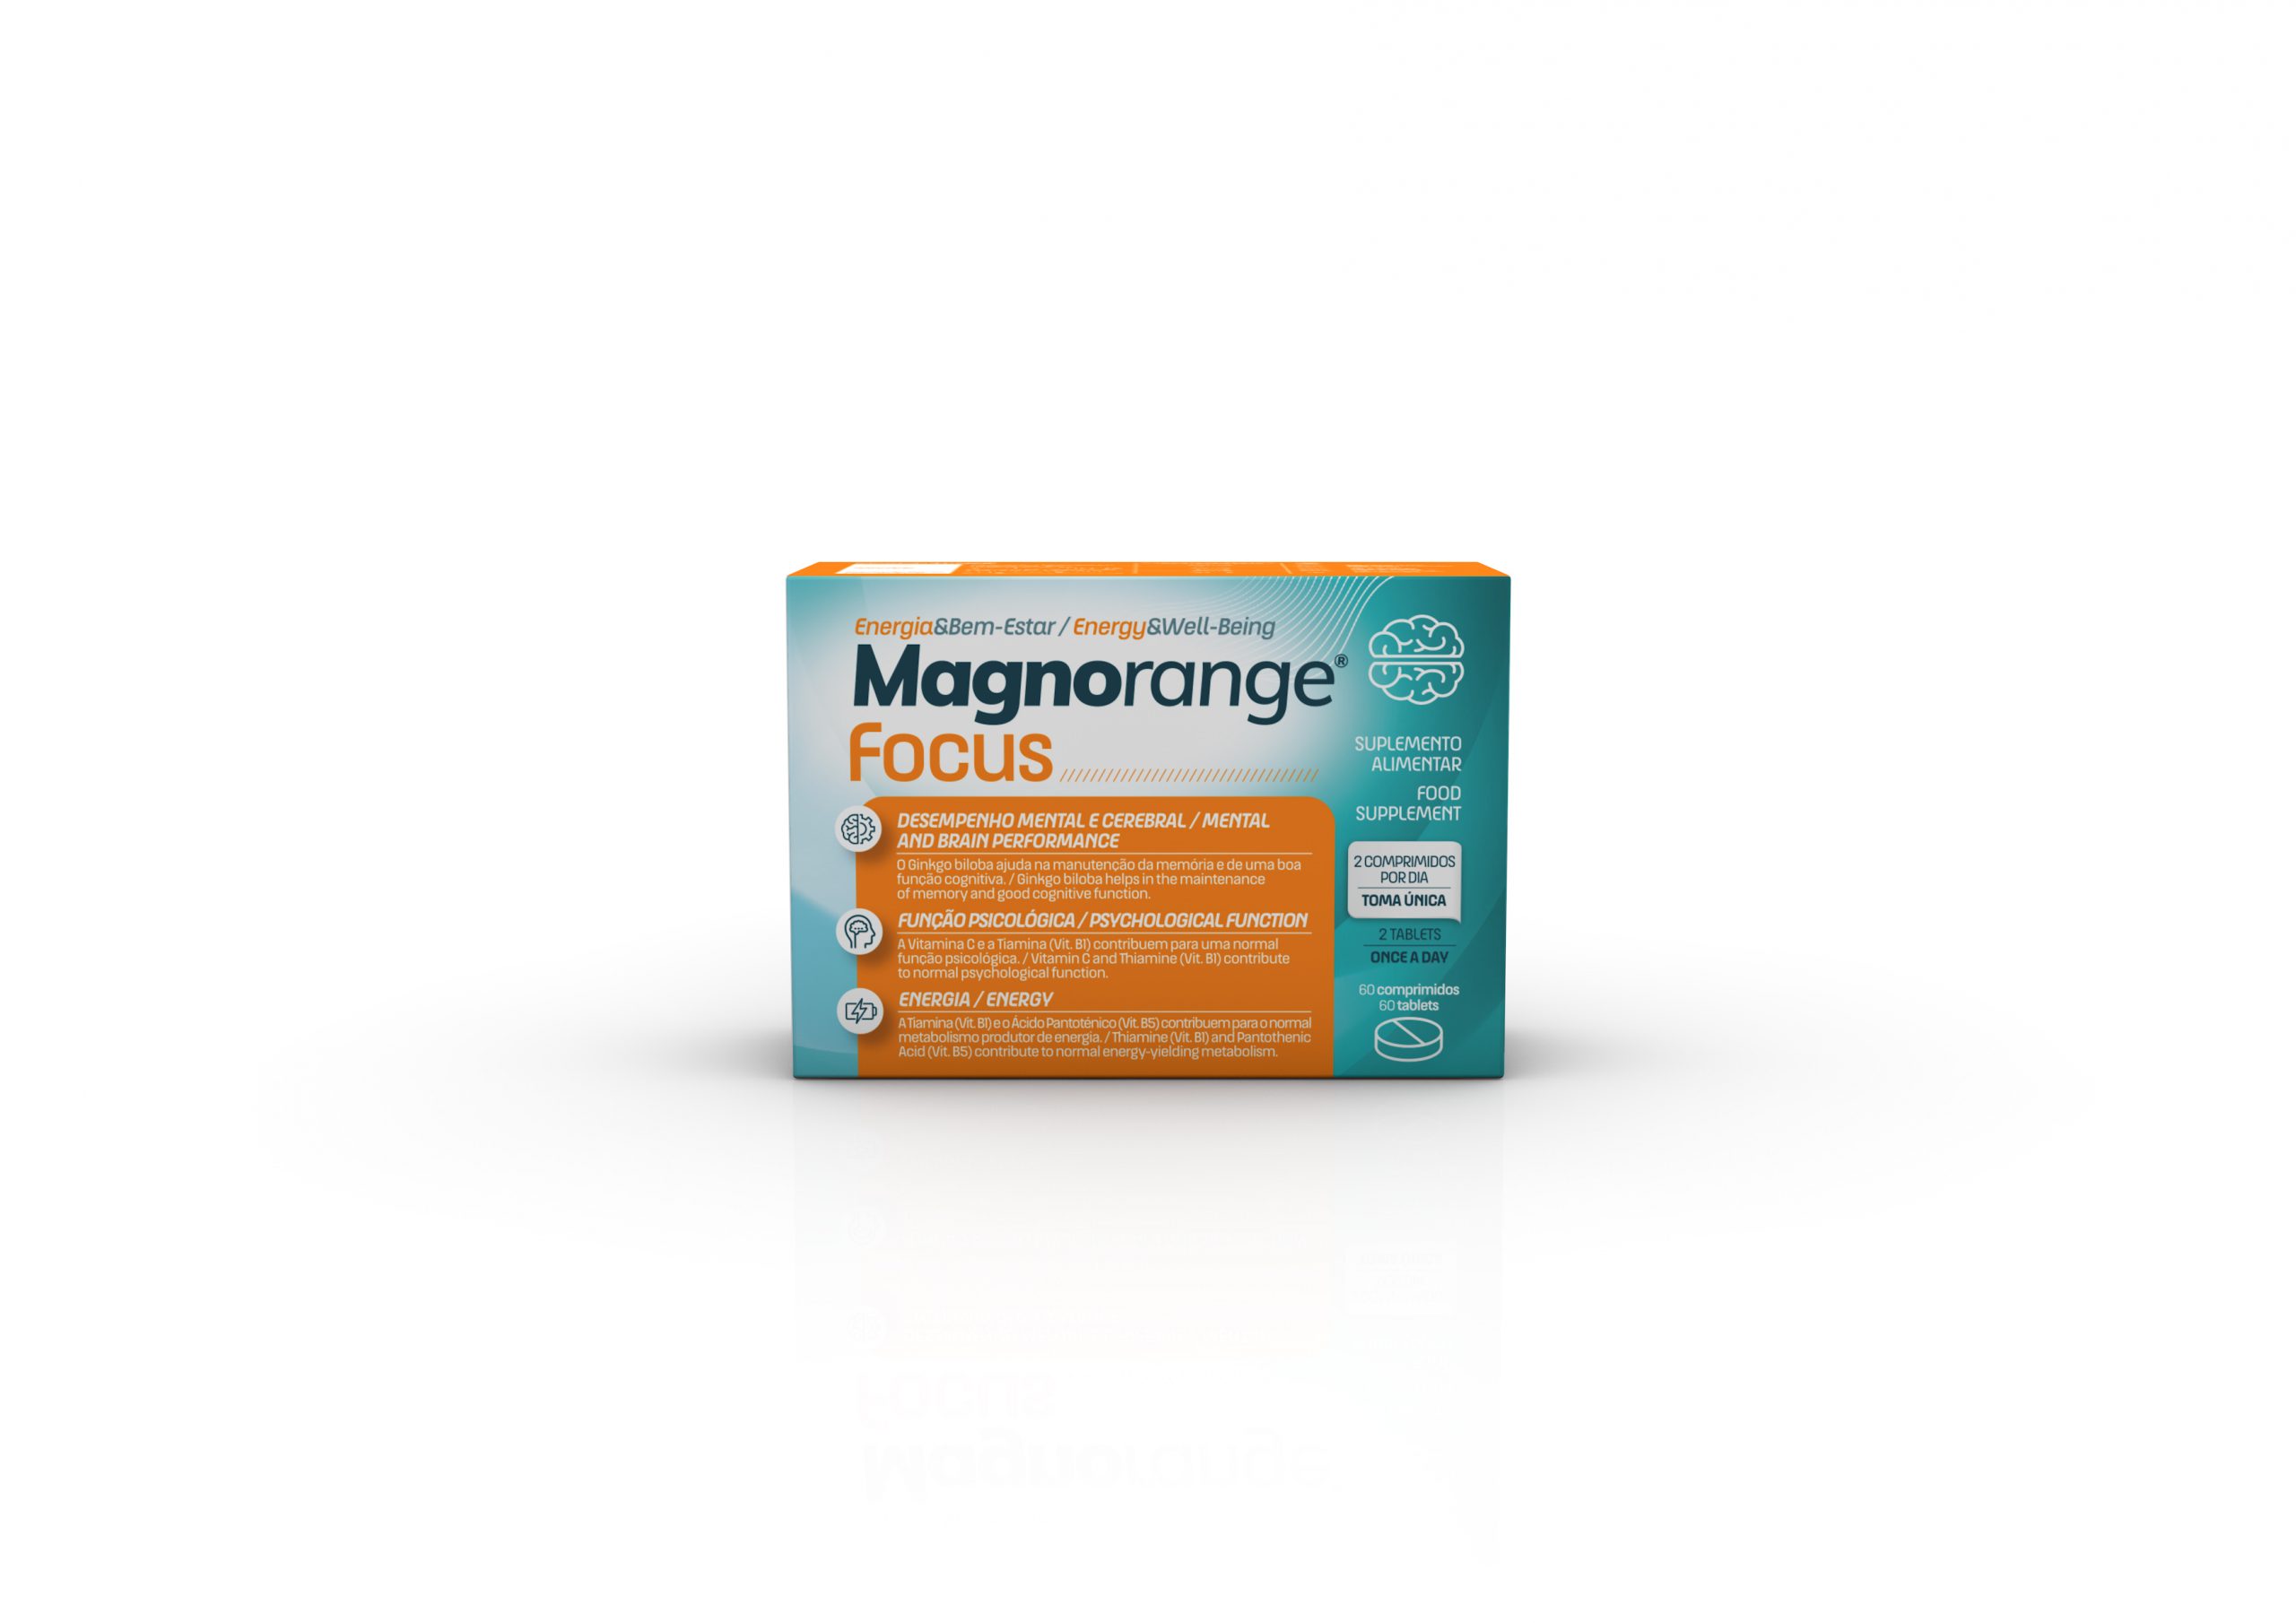 Magnorange-Focus-scaled-1.jpg